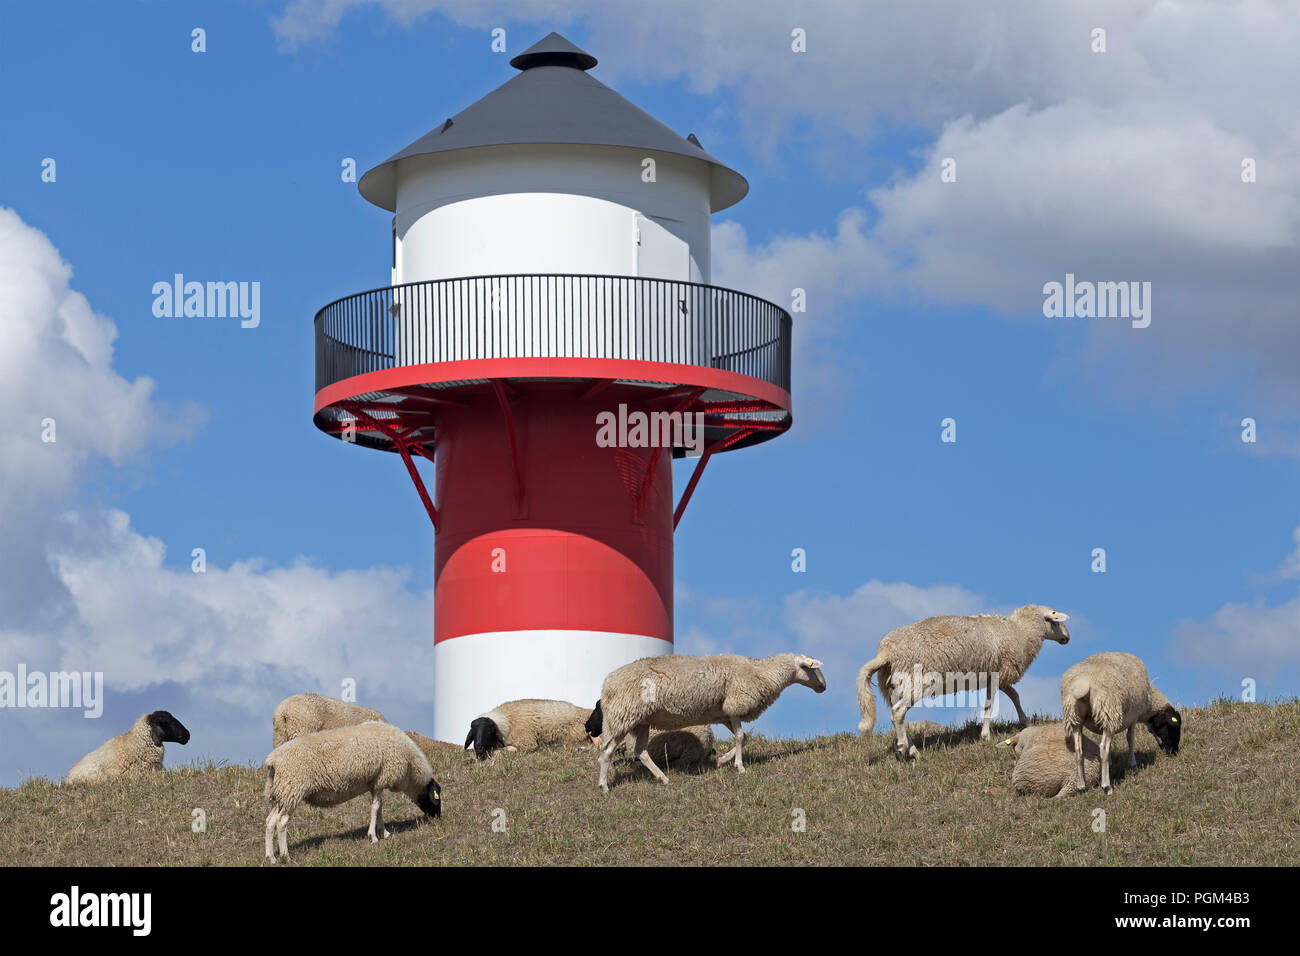 Moutons en avant du phare, Luehe, Altes Land (vieux pays), Basse-Saxe, Allemagne Banque D'Images